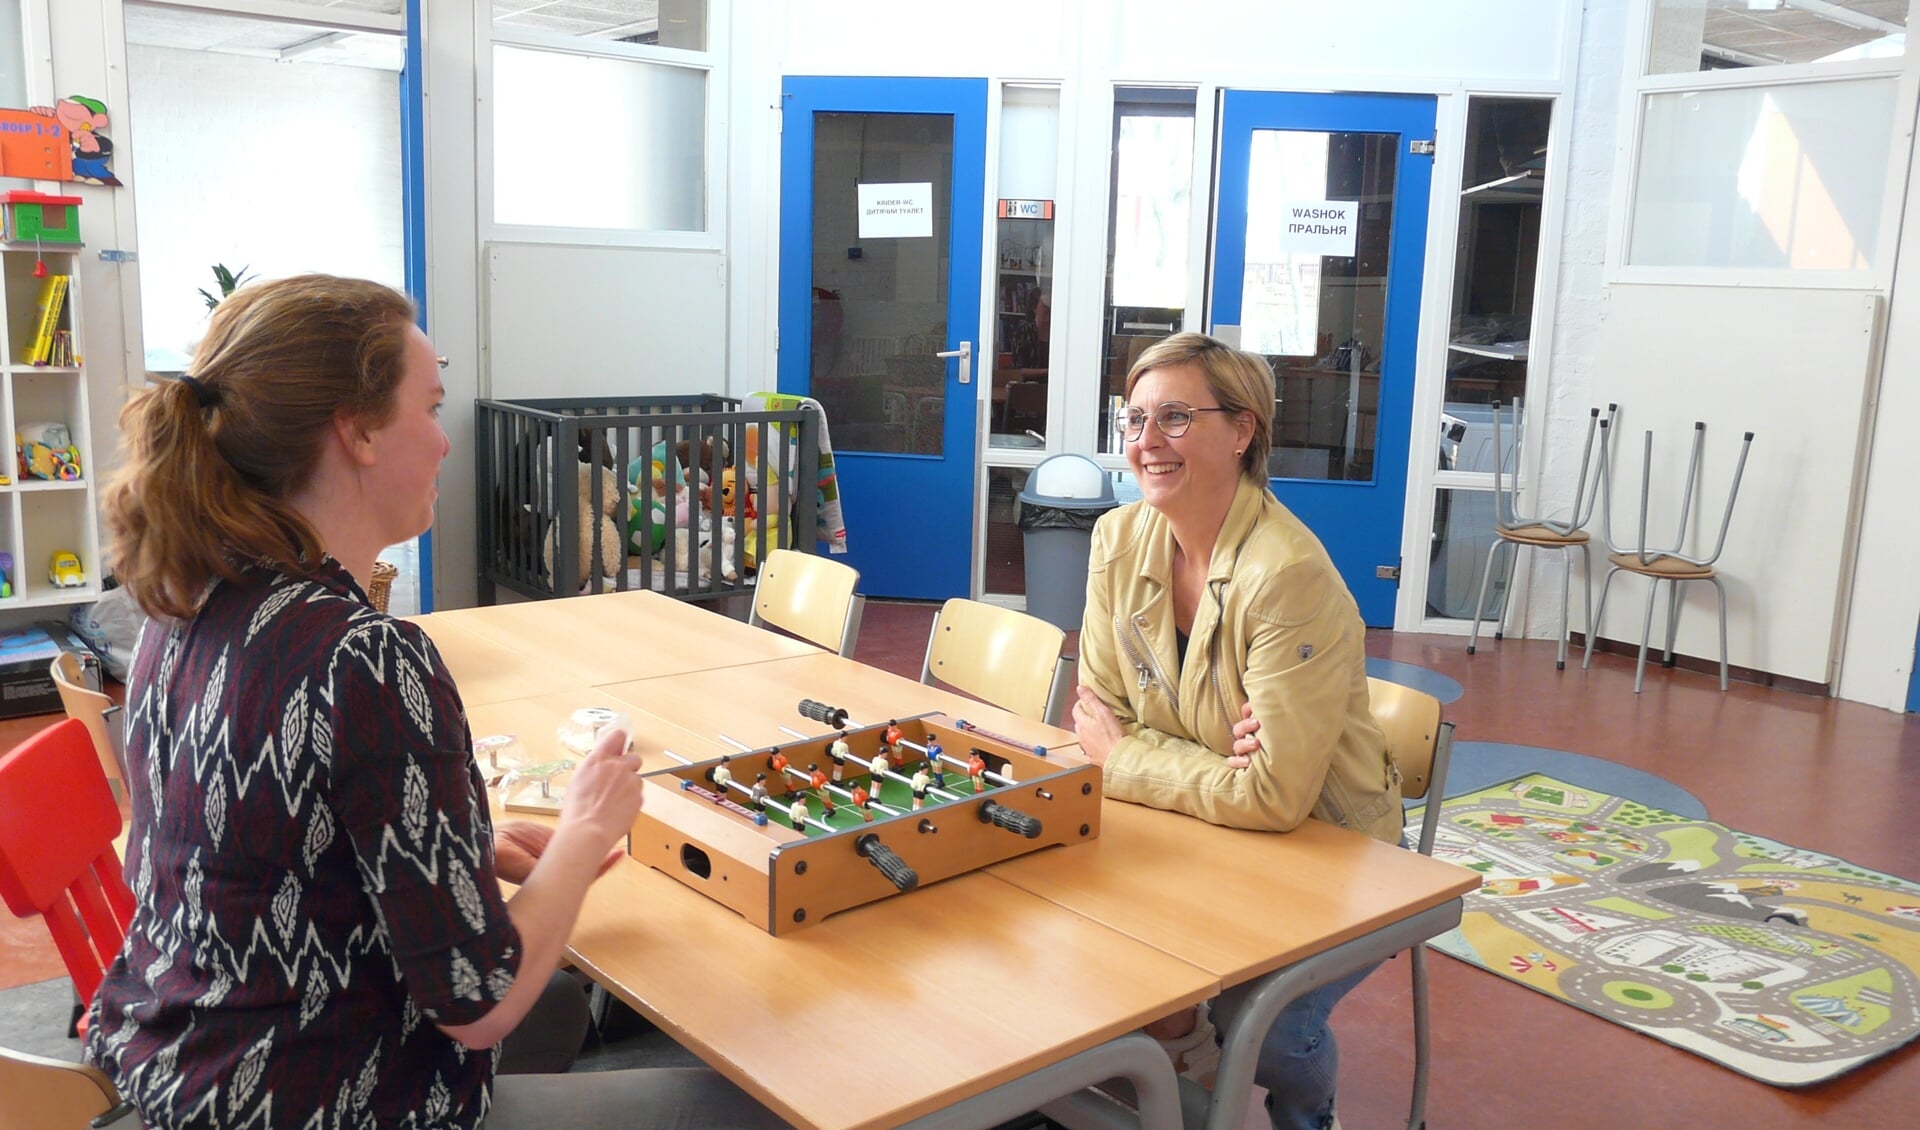 Projectleider Anne Faber en Pulse-directeur Yvette Huige proberen een spelletje uit in de speelkamer.